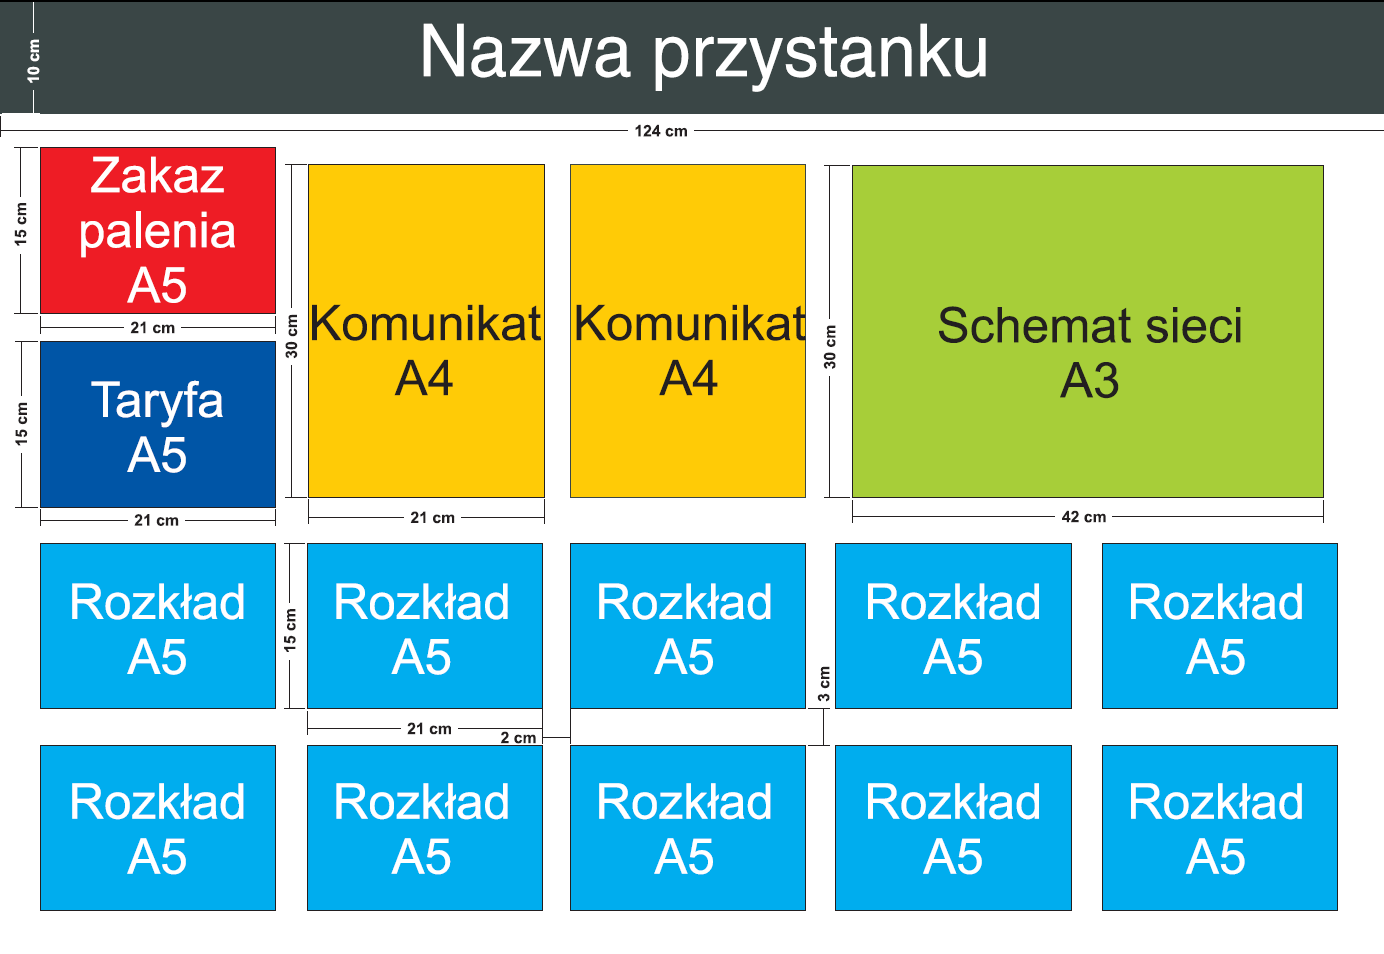 Przykład wkładu do gabloty informacyjnej ZTM Poznań: Uwaga: powyższy rysunek stanowi wyłącznie przykład (szkic poglądowy), a układ i wymiary gablot oraz kieszonek na wkładach wewnętrznych należy